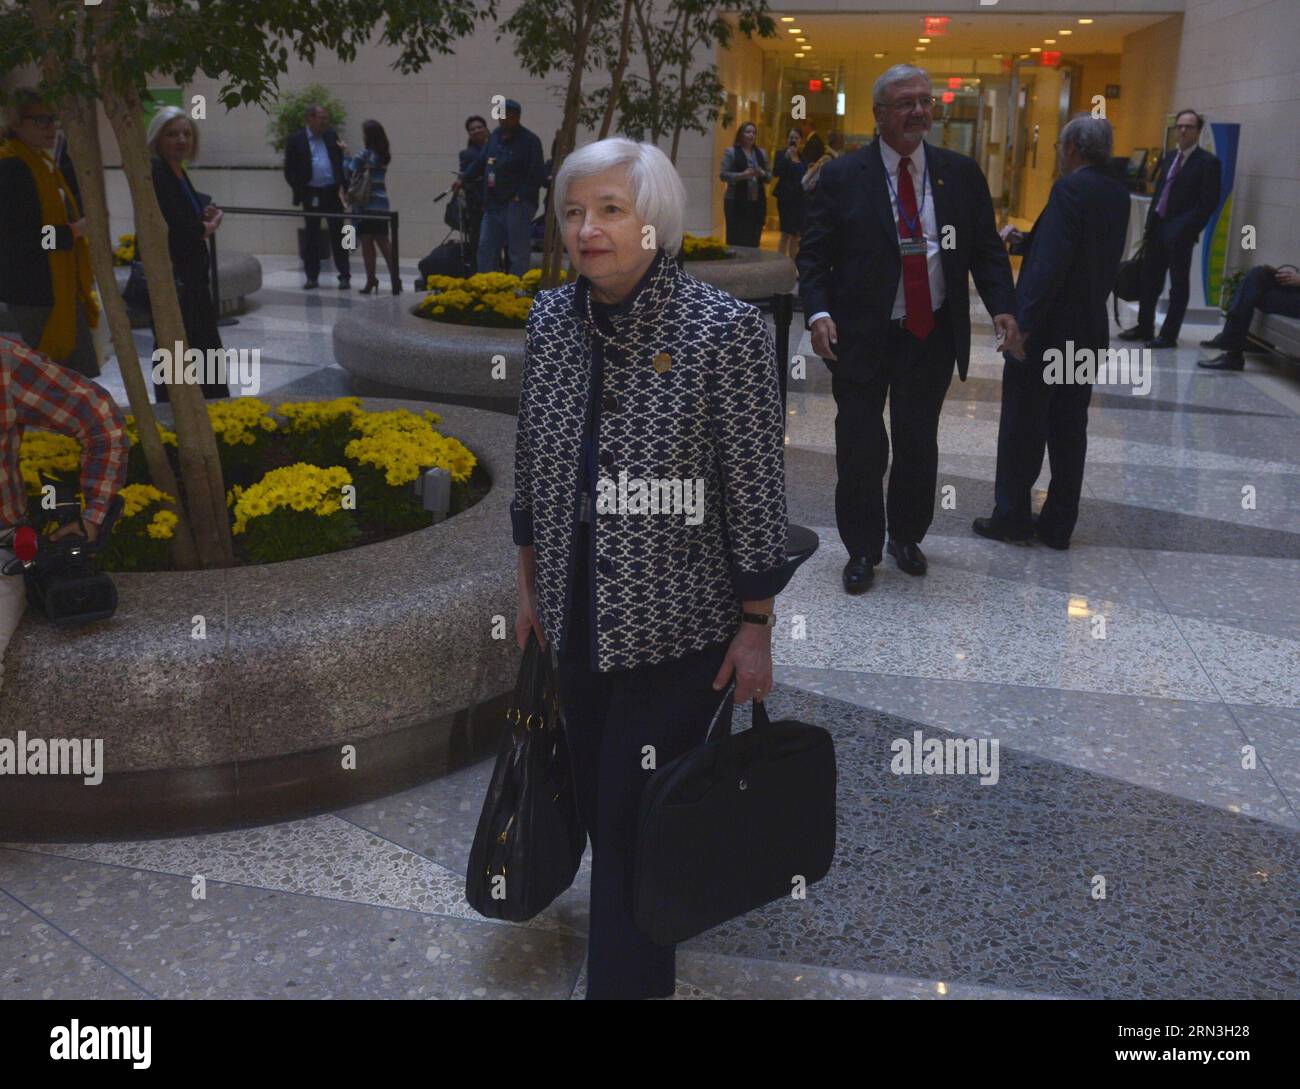 WASHINGTON D.C., le 16 avril 2015 -- Janet Yellen, présidente de la Réserve fédérale, arrive à la réunion des ministres des Finances et des gouverneurs des banques centrales du G20 à Washington D.C., capitale des États-Unis, le 16 avril 2015. ) RÉUNION États-Unis-WASHINGTON D.C.-G20 YinxBogu PUBLICATIONxNOTxINxCHN Washington D C avril 16 2015 la présidente de la Réserve fédérale Janet Yellen arrive pour la réunion du ministre des Finances et des gouverneurs des banques centrales du G20 à Washington D C capitale des États-Unis avril 16 2015 U S Washington D C Réunion du G20 YinxBogu PUBLICATIONxNOTxINxCHN Banque D'Images